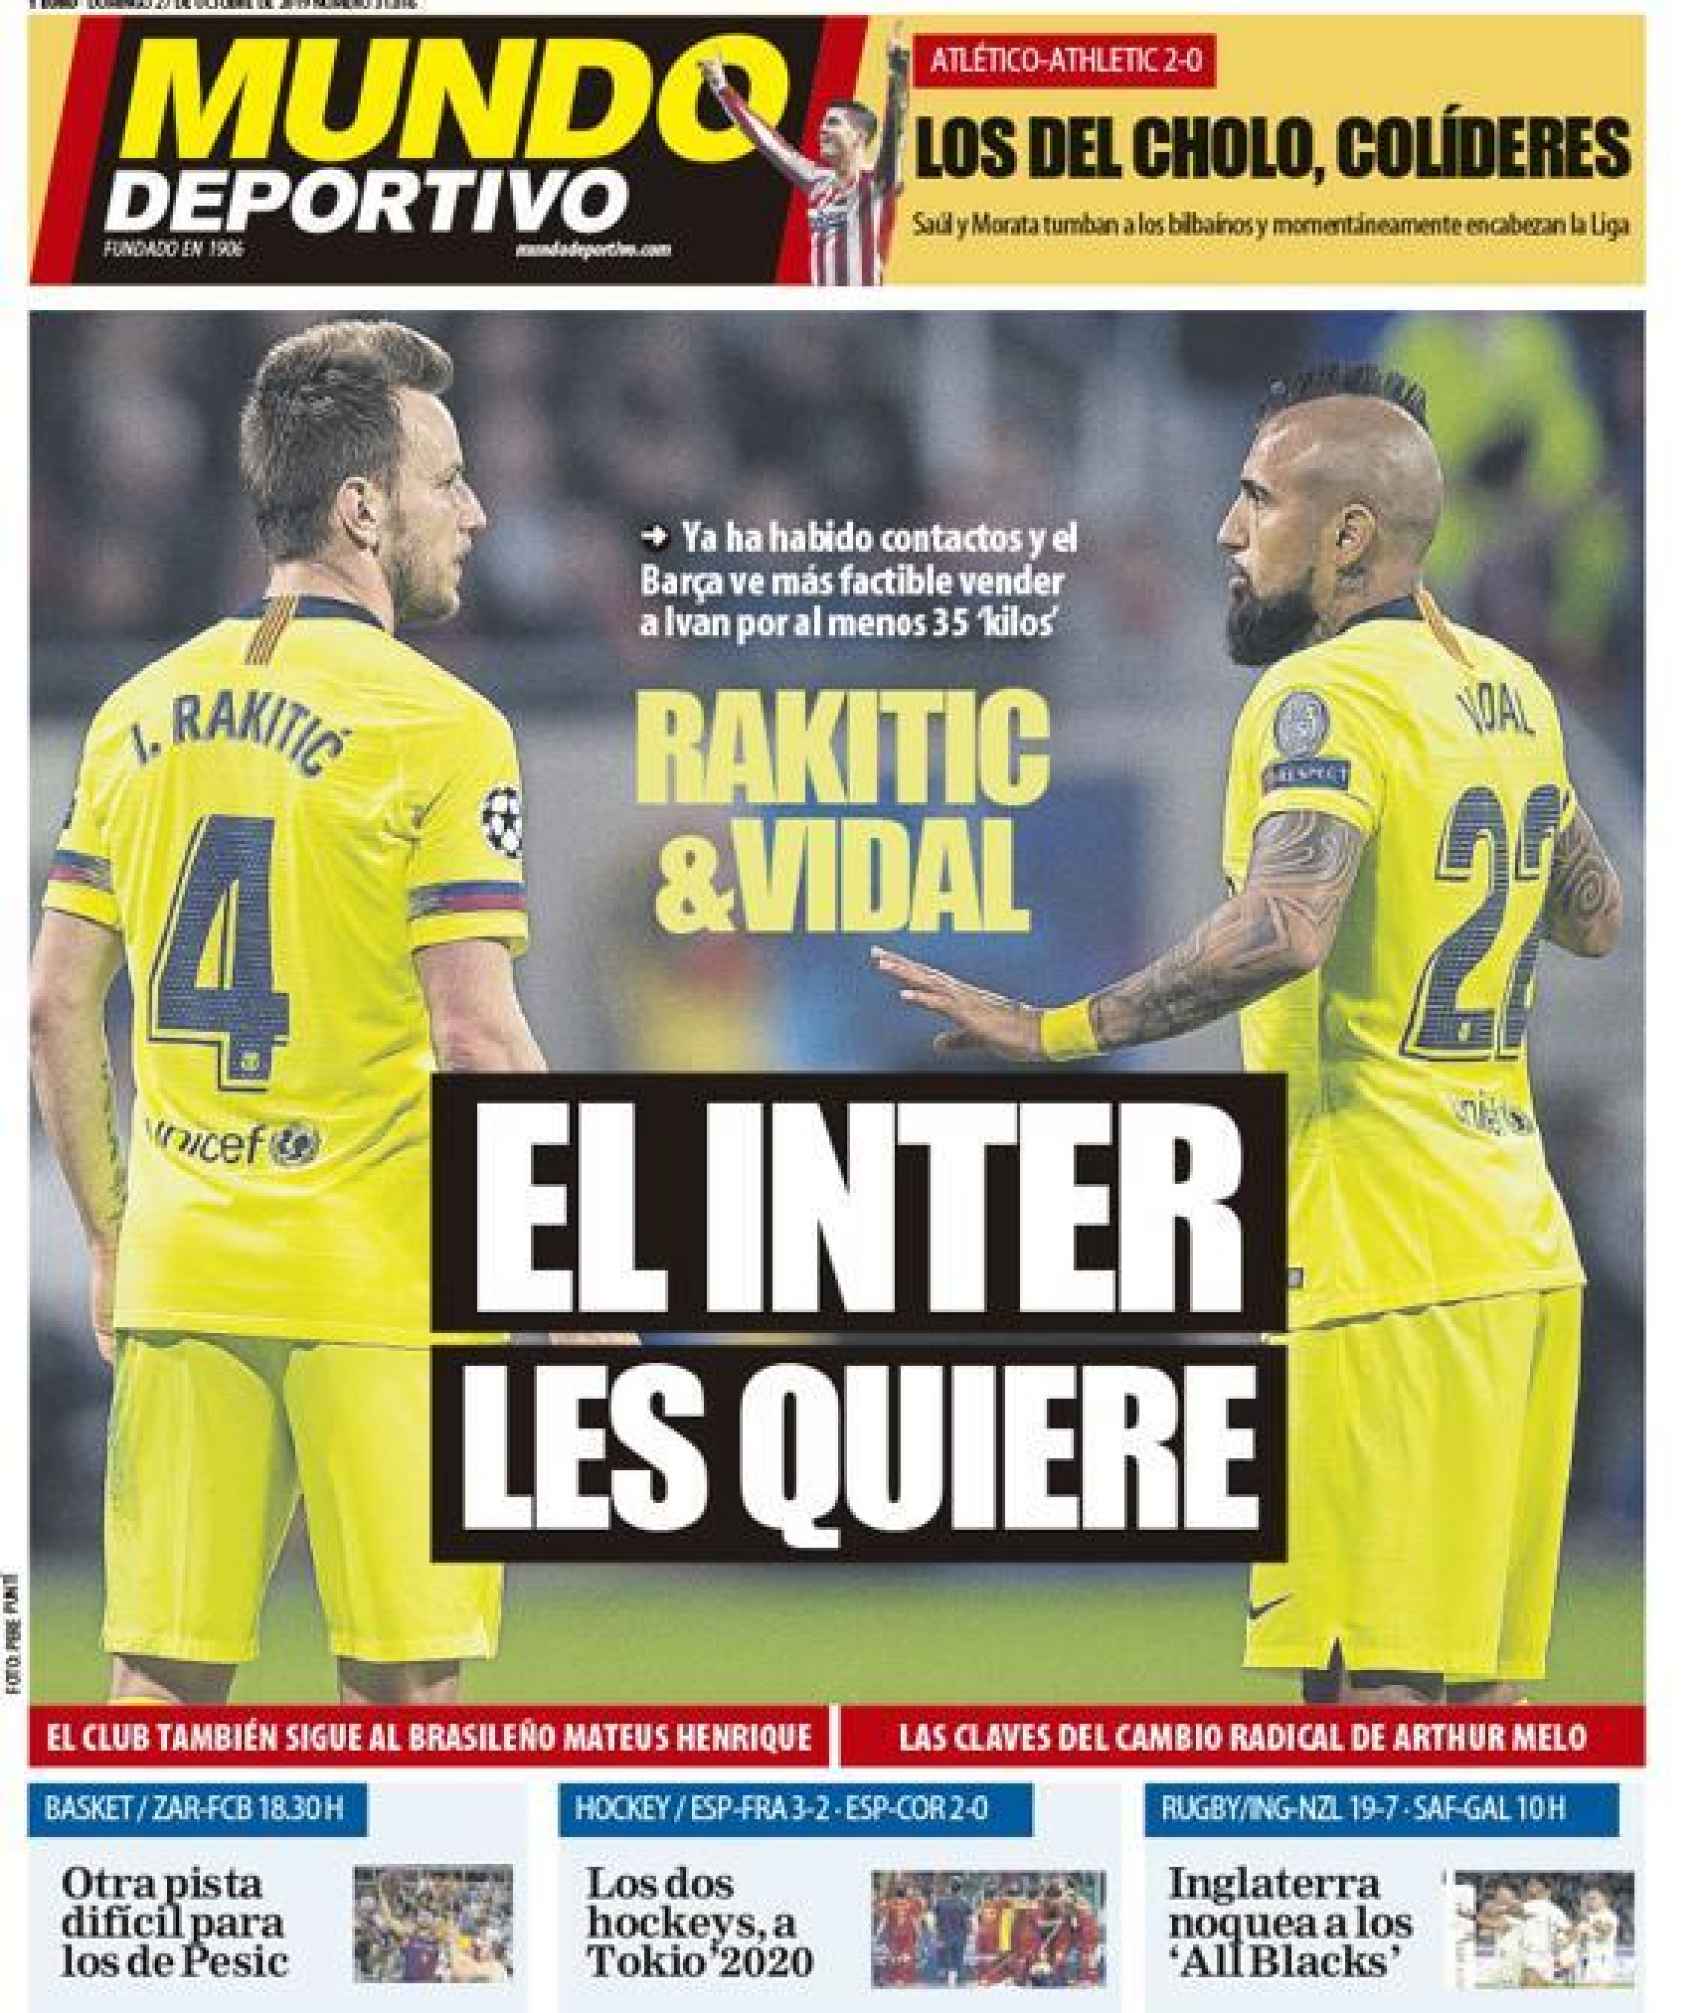 La portada del diario Mundo Deportivo (27/10/2019)